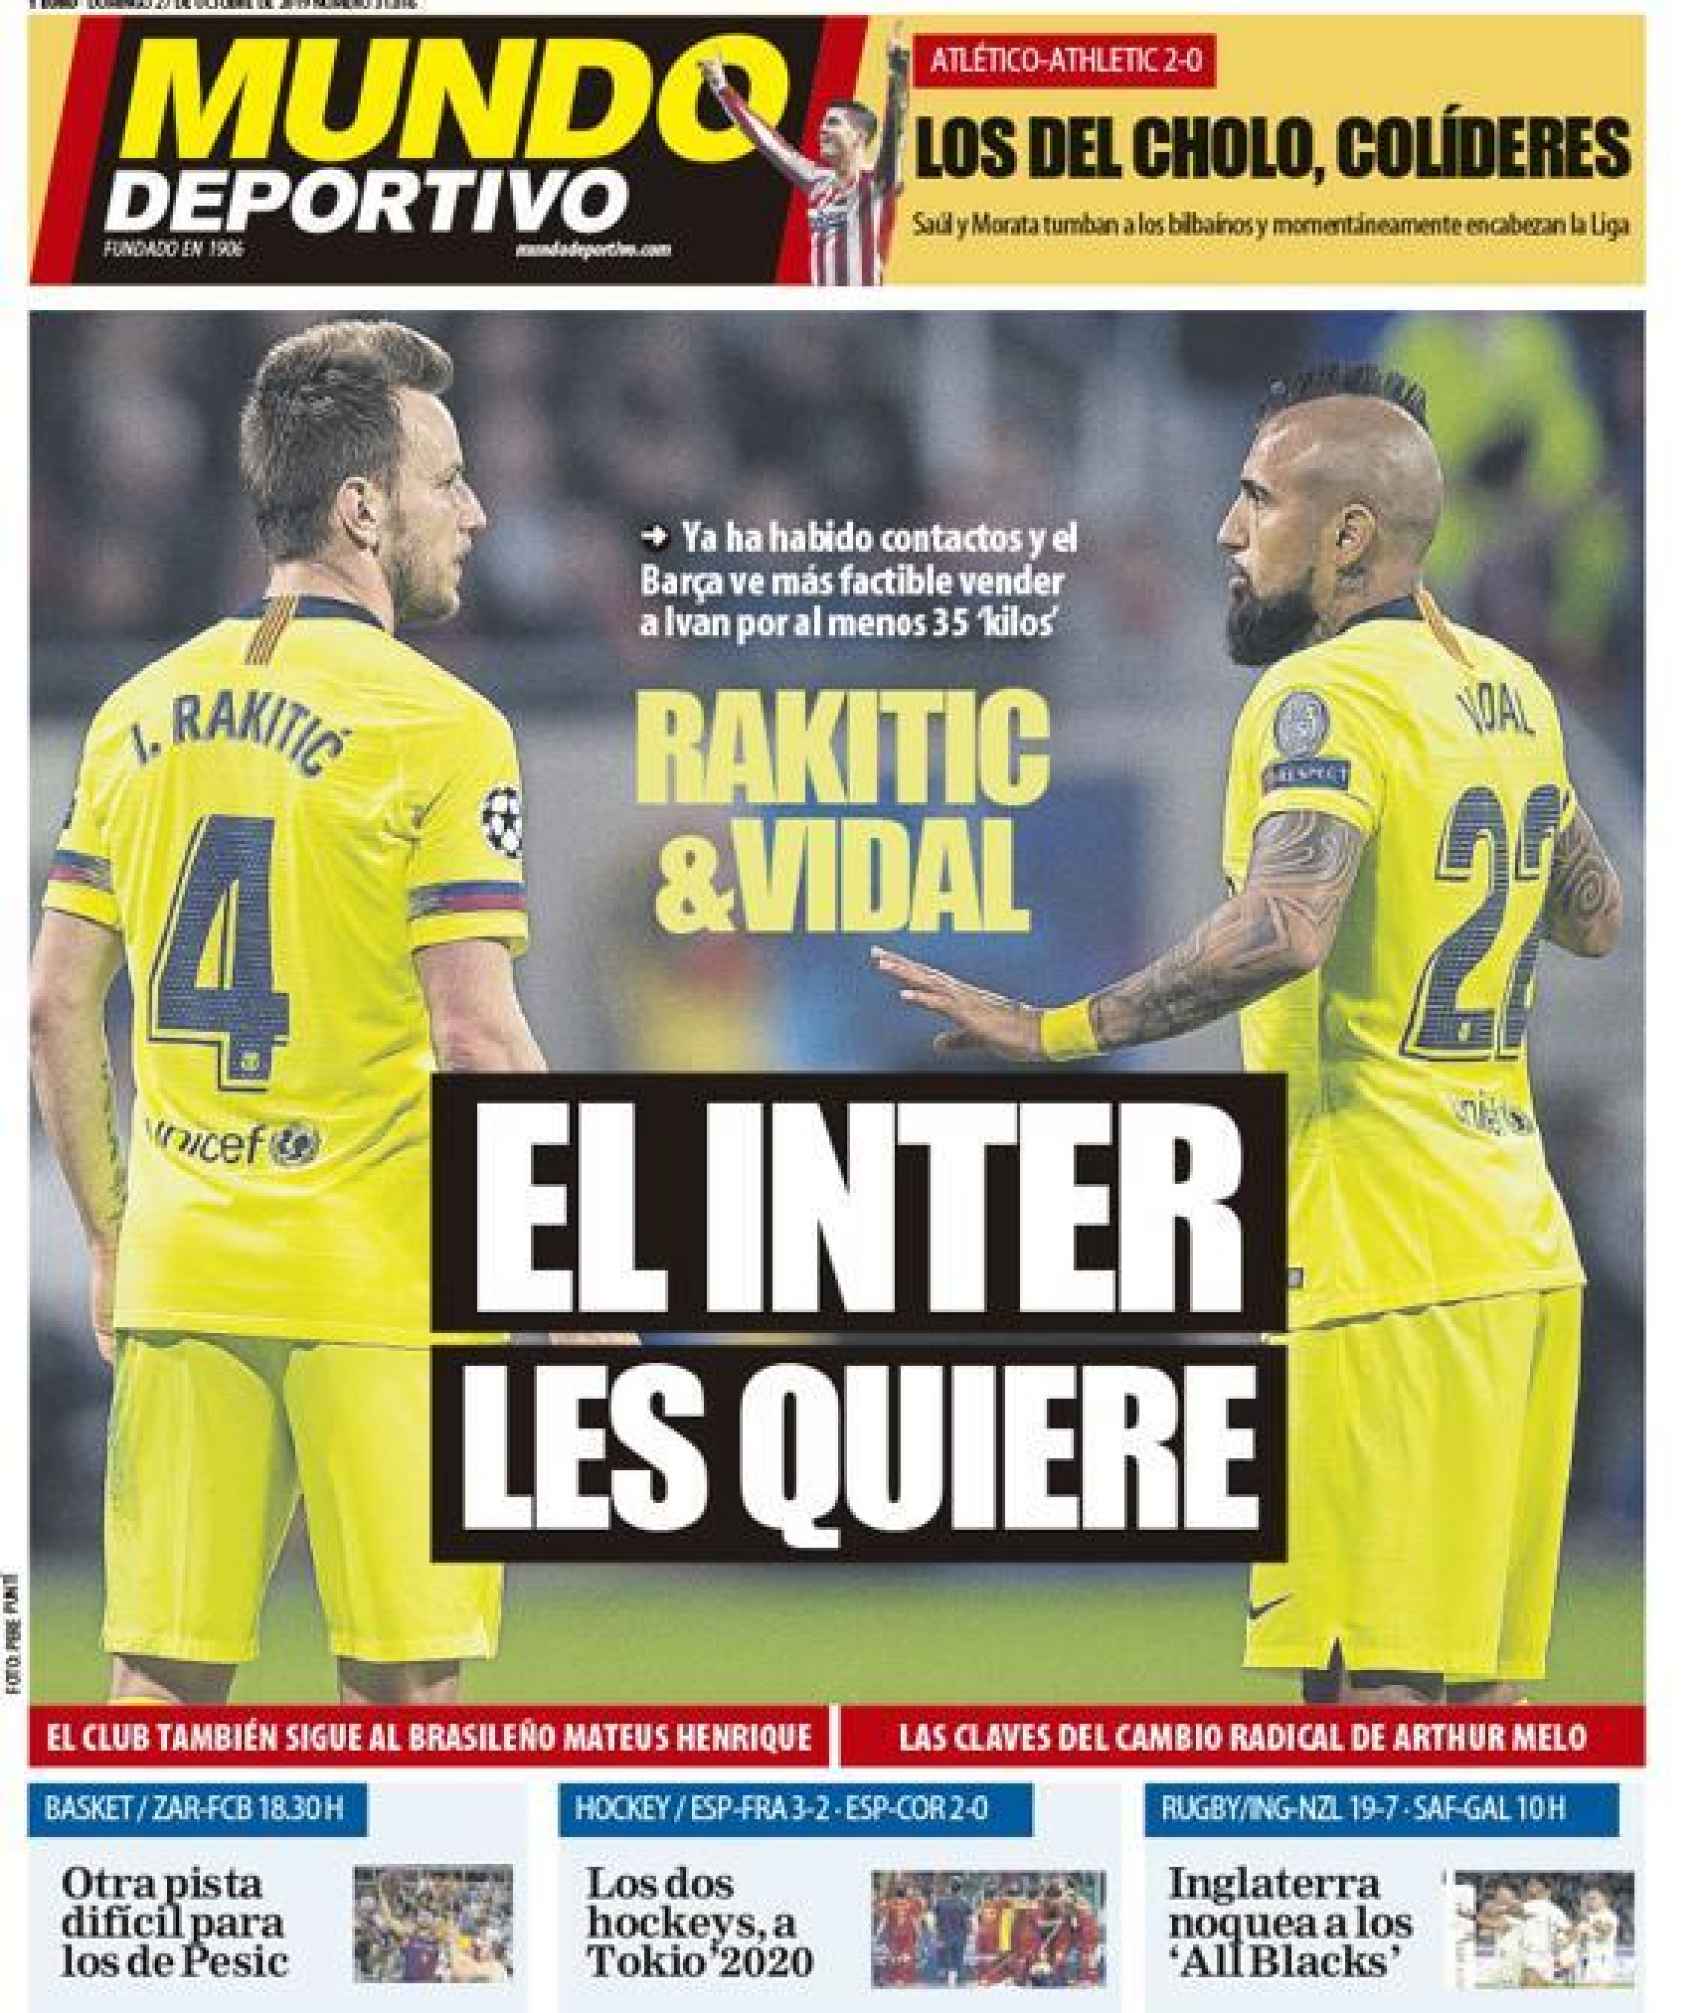 La portada del diario Mundo Deportivo (27/10/2019)